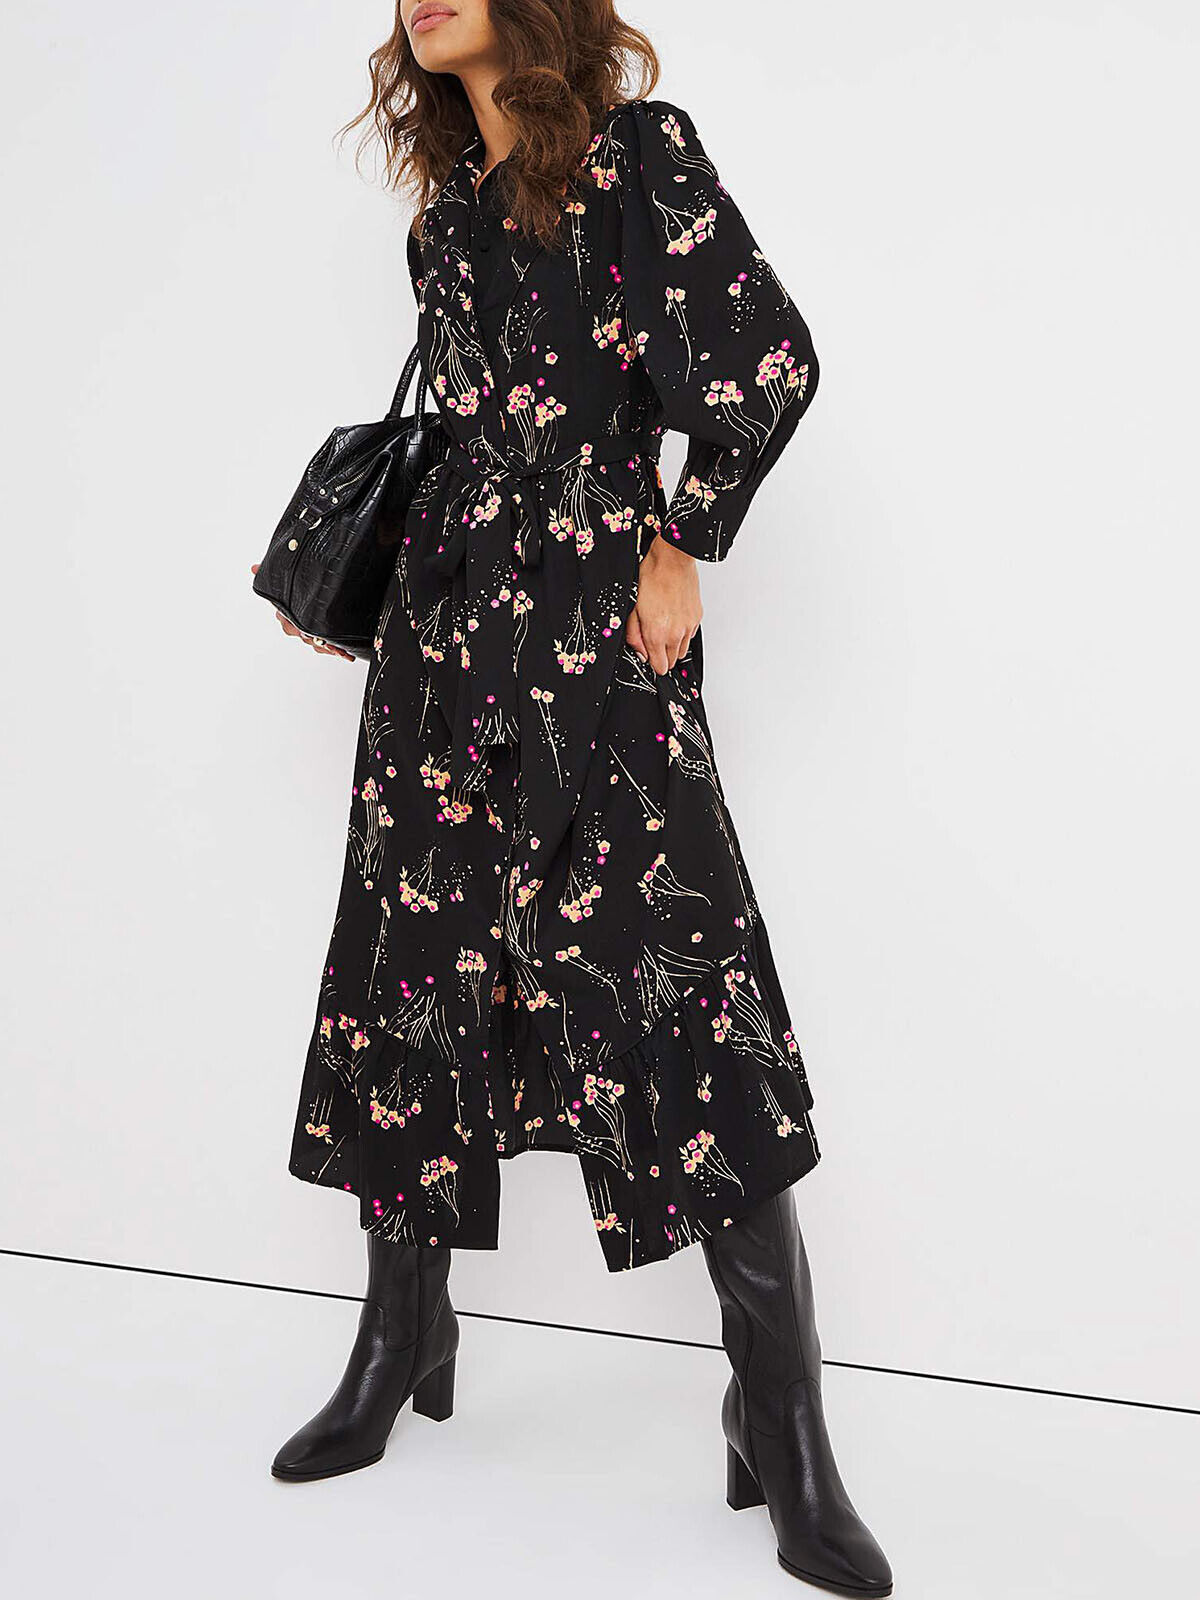 JD Williams Black Floral Tie Waist Midi Shirt Dress in Sizes 14, 16, 18 RRP £50